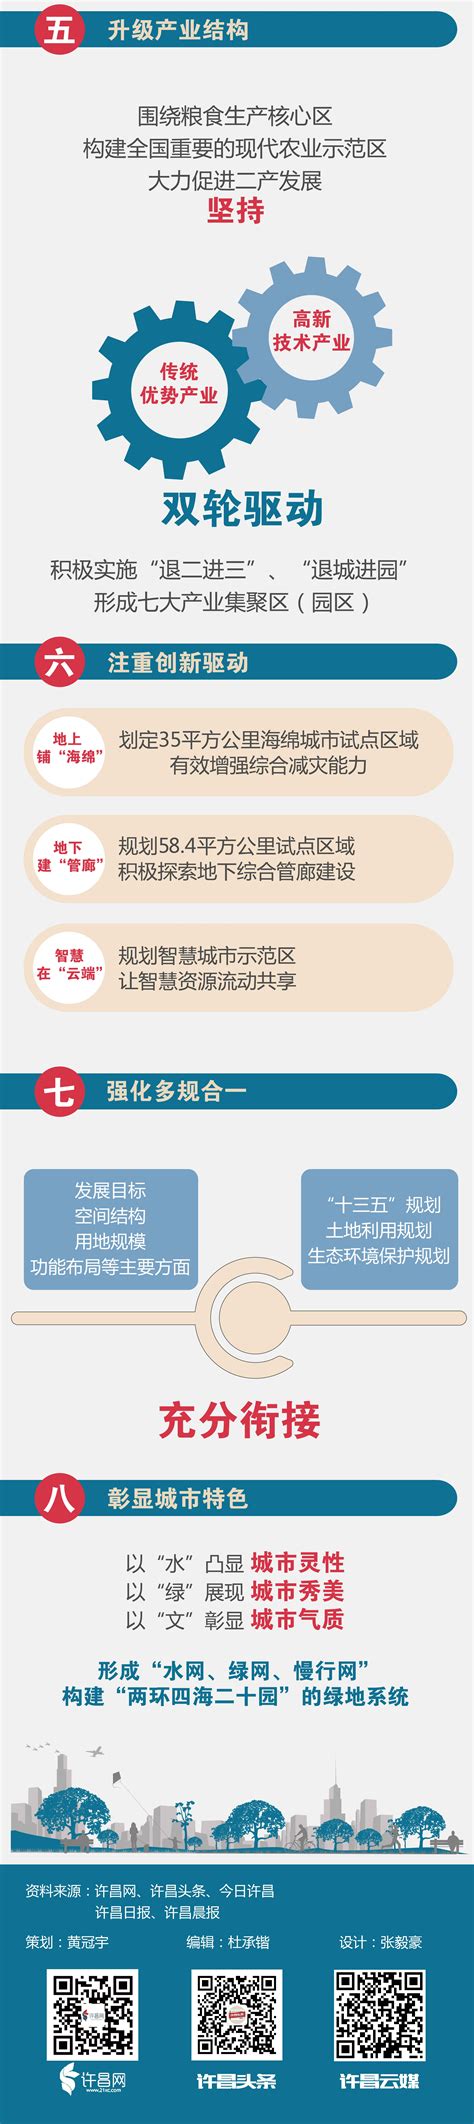 许昌网-一张图看懂许昌城市总体规划亮点